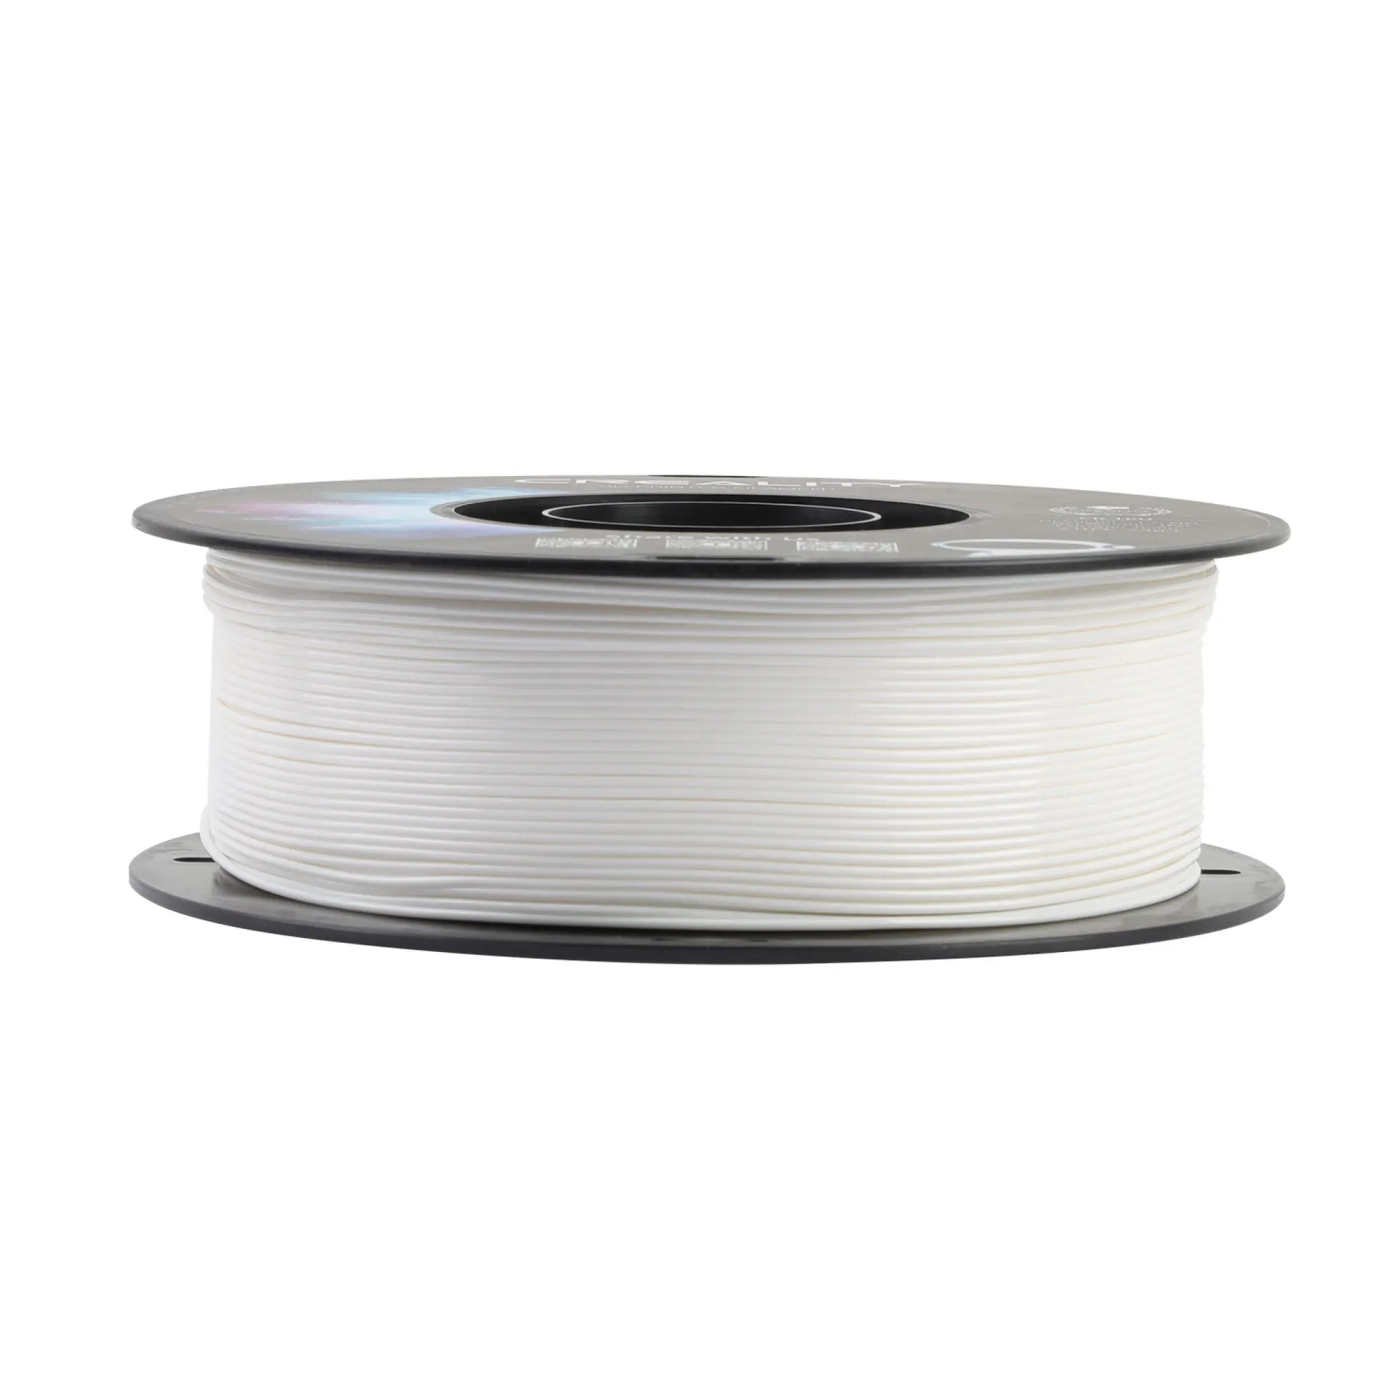 Купить TPU Filament (пластик) для 3D принтера CREALITY 1кг, 1.75мм, белый - фото 4